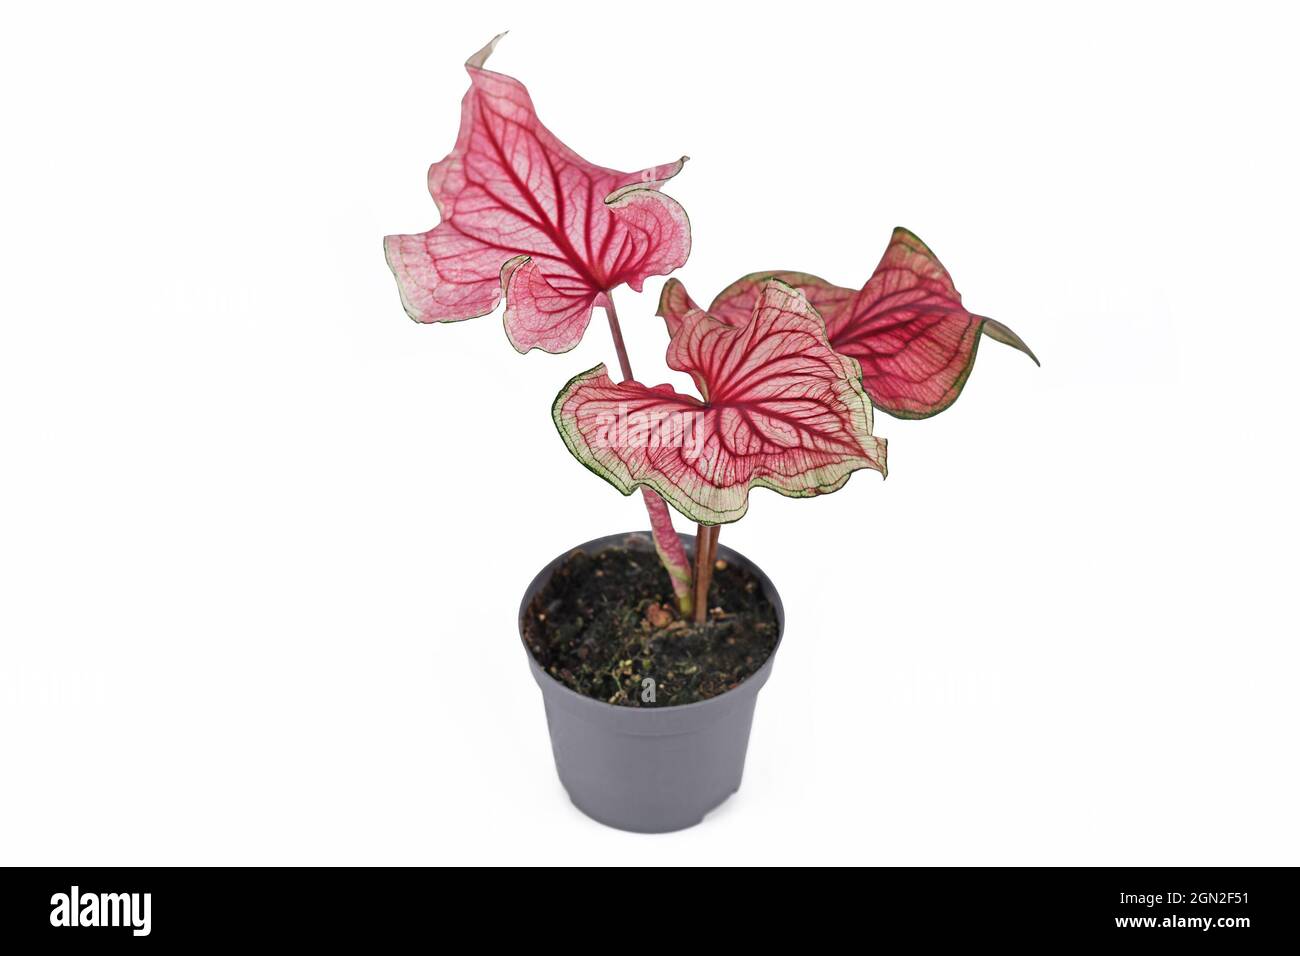 Plante exotique rose 'Caladium Florida Sweetheart' dans un pot de fleur isolée sur fond blanc Banque D'Images